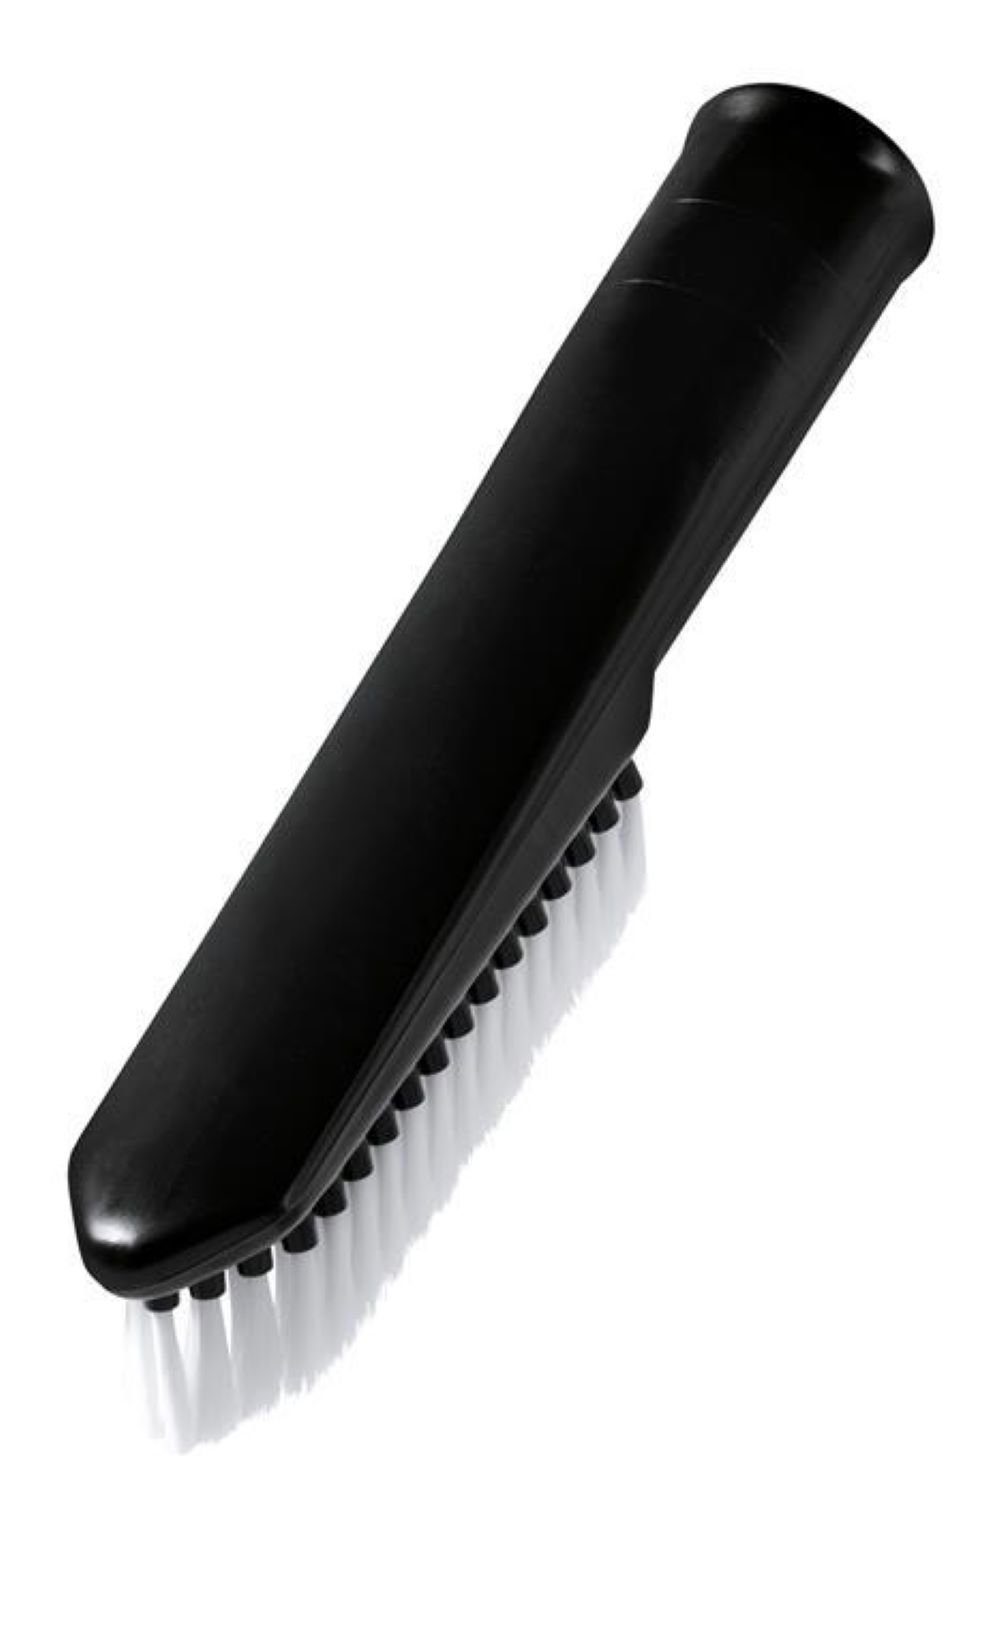 Düsen Rohrdurchmesser Profi Set mit Staubsaugerdüsen-Set Bürsten FixedByU 6 35mm Staubsauger teiliges 35mm, für und Staubsaugermodelle Zubehör